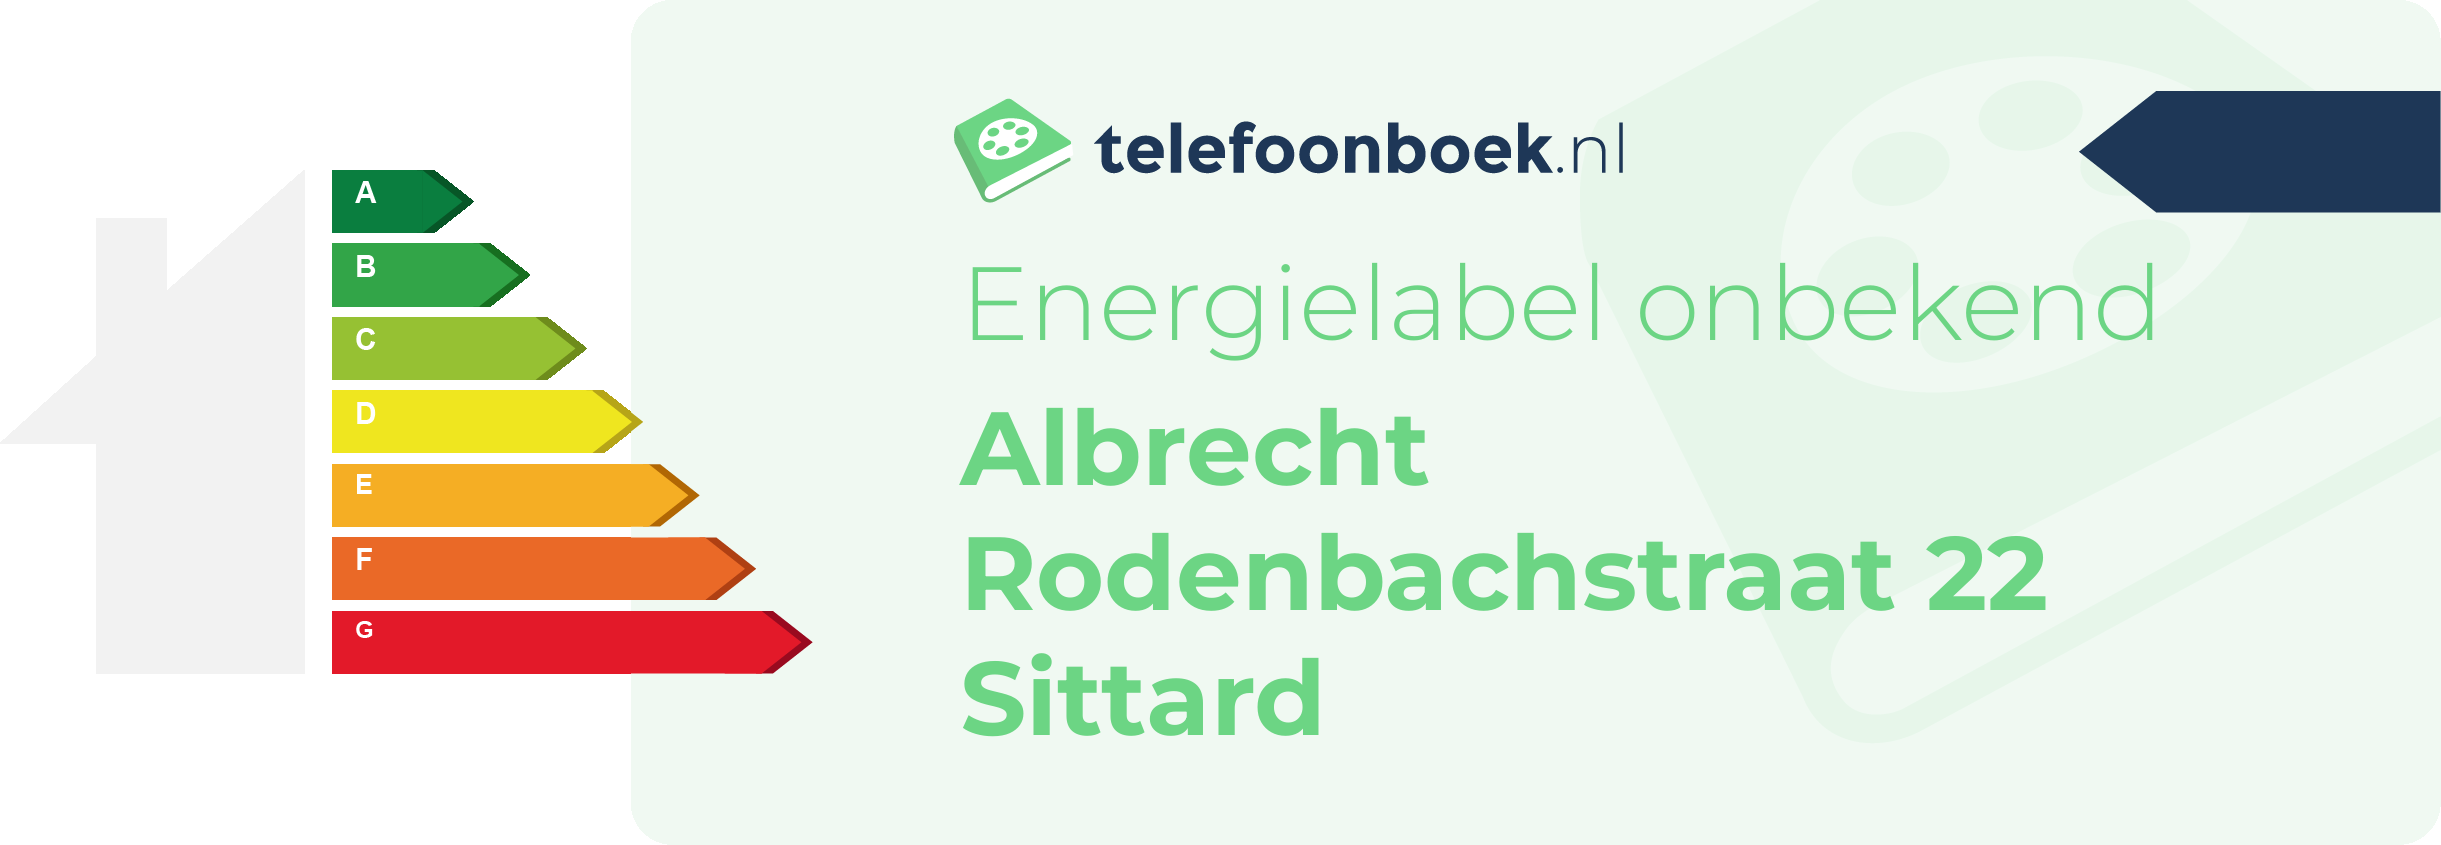 Energielabel Albrecht Rodenbachstraat 22 Sittard